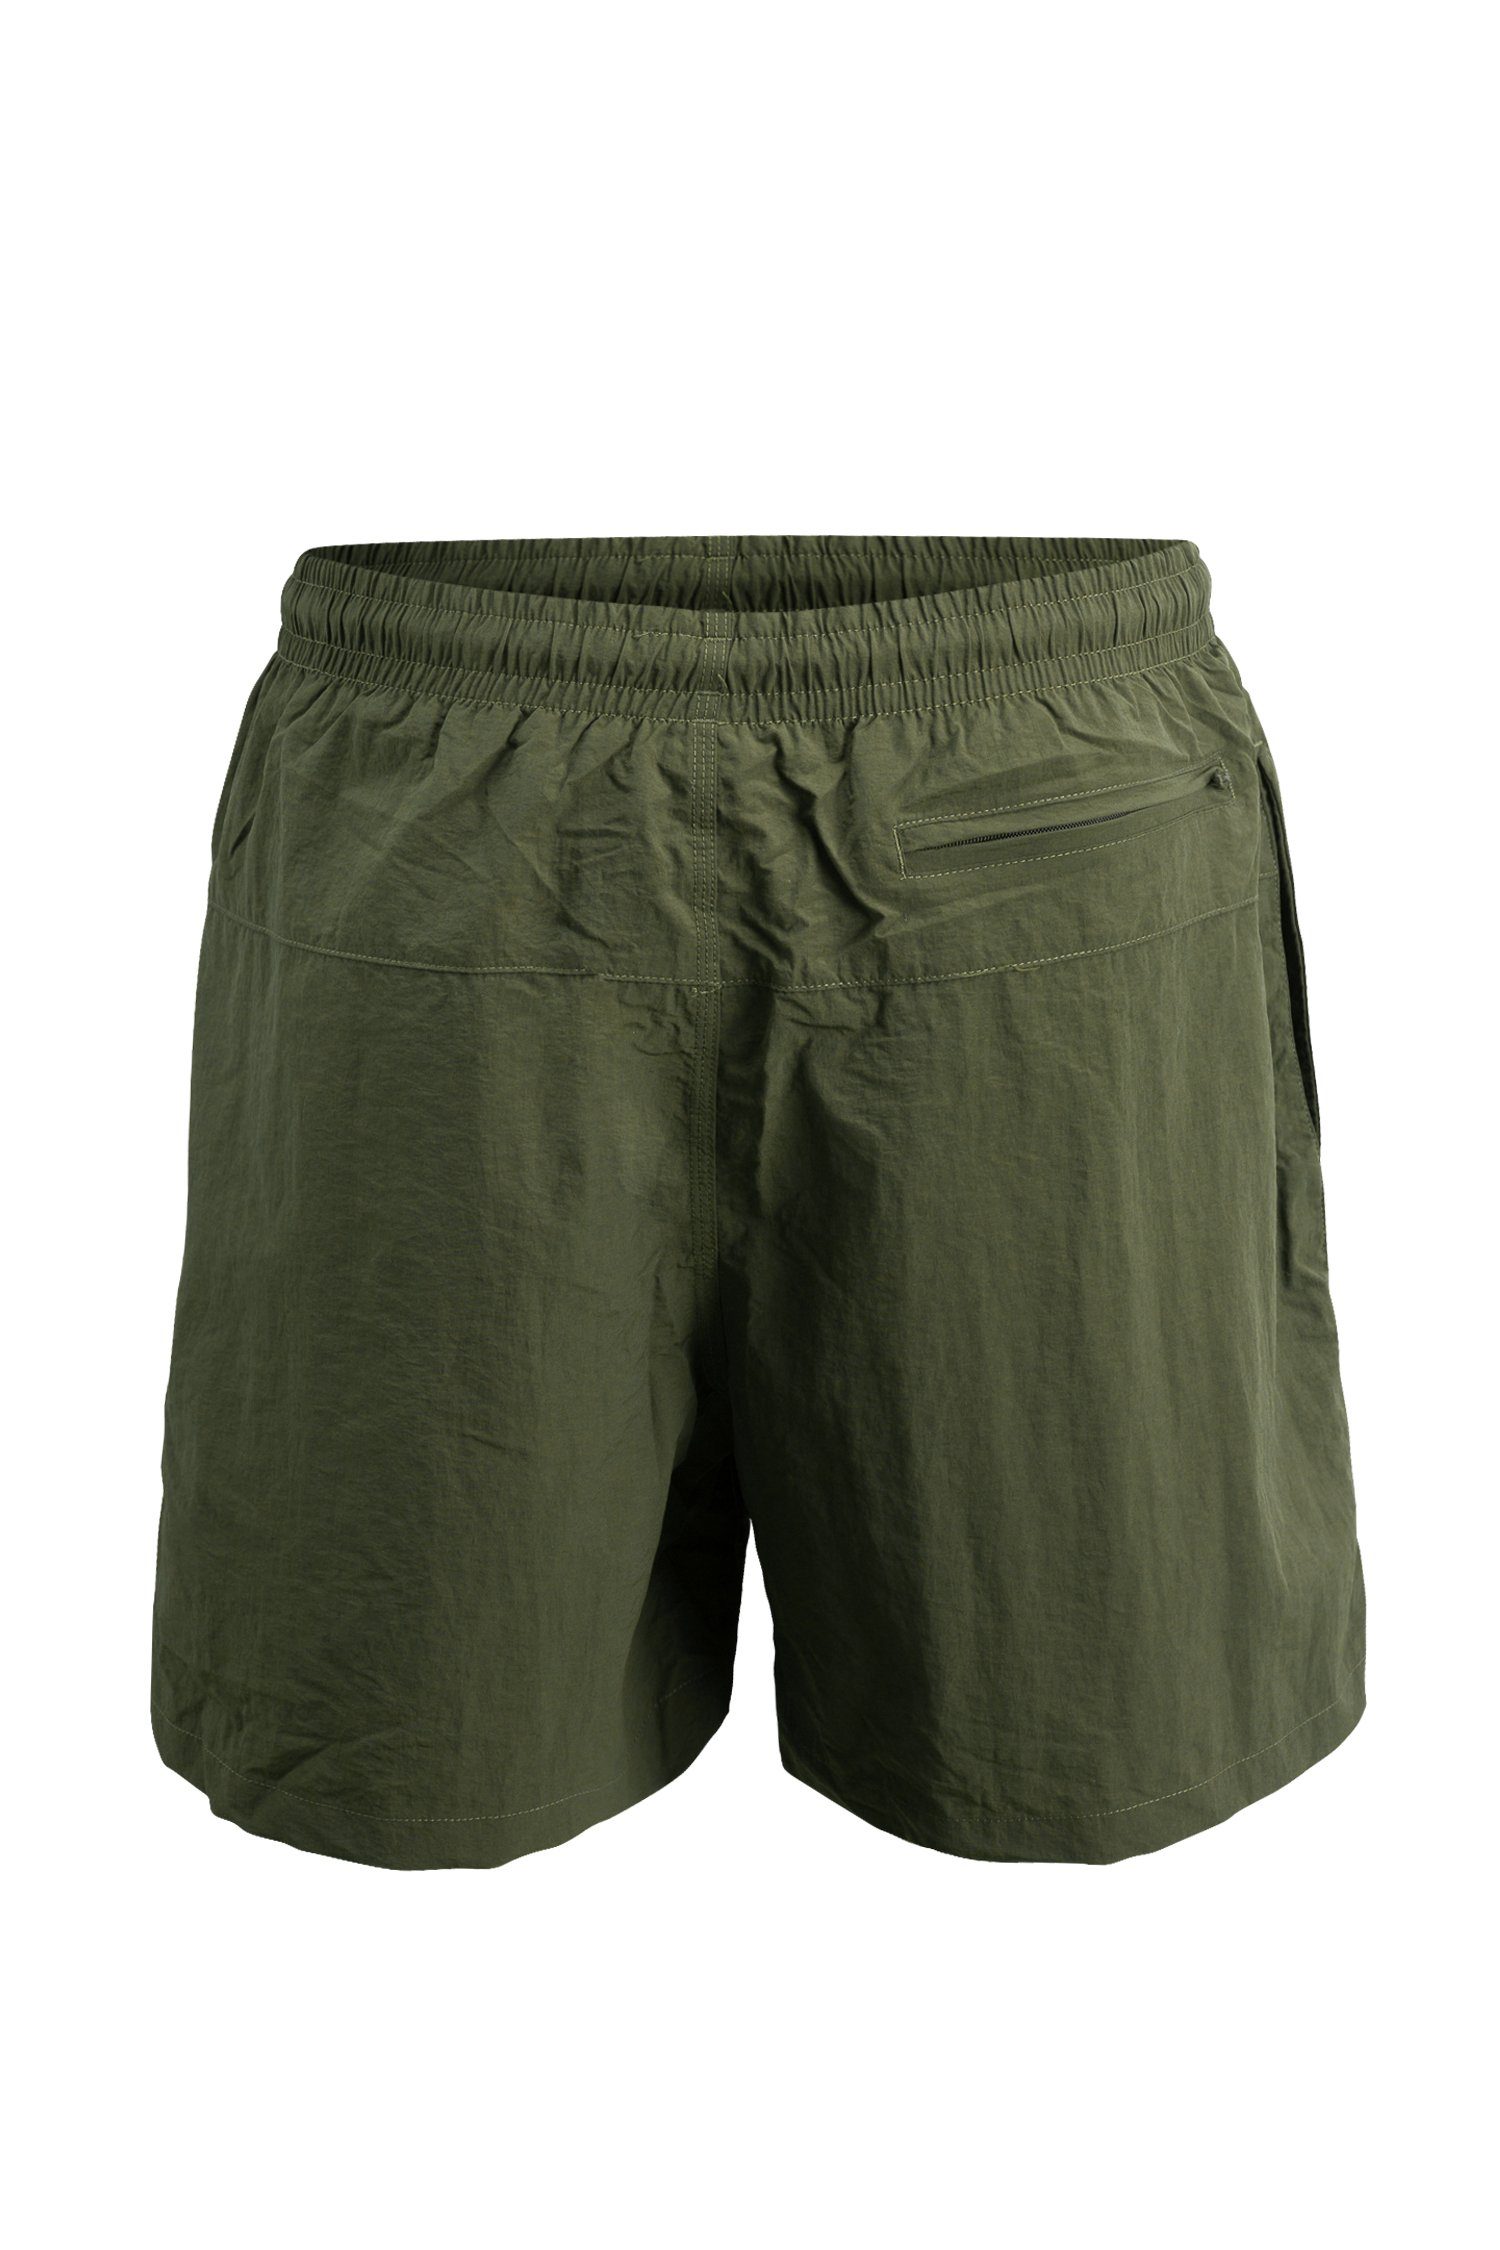 Olive/Khaki - Badeshorts Swim schnelltrocknend Shorts Badehosen Manufaktur13